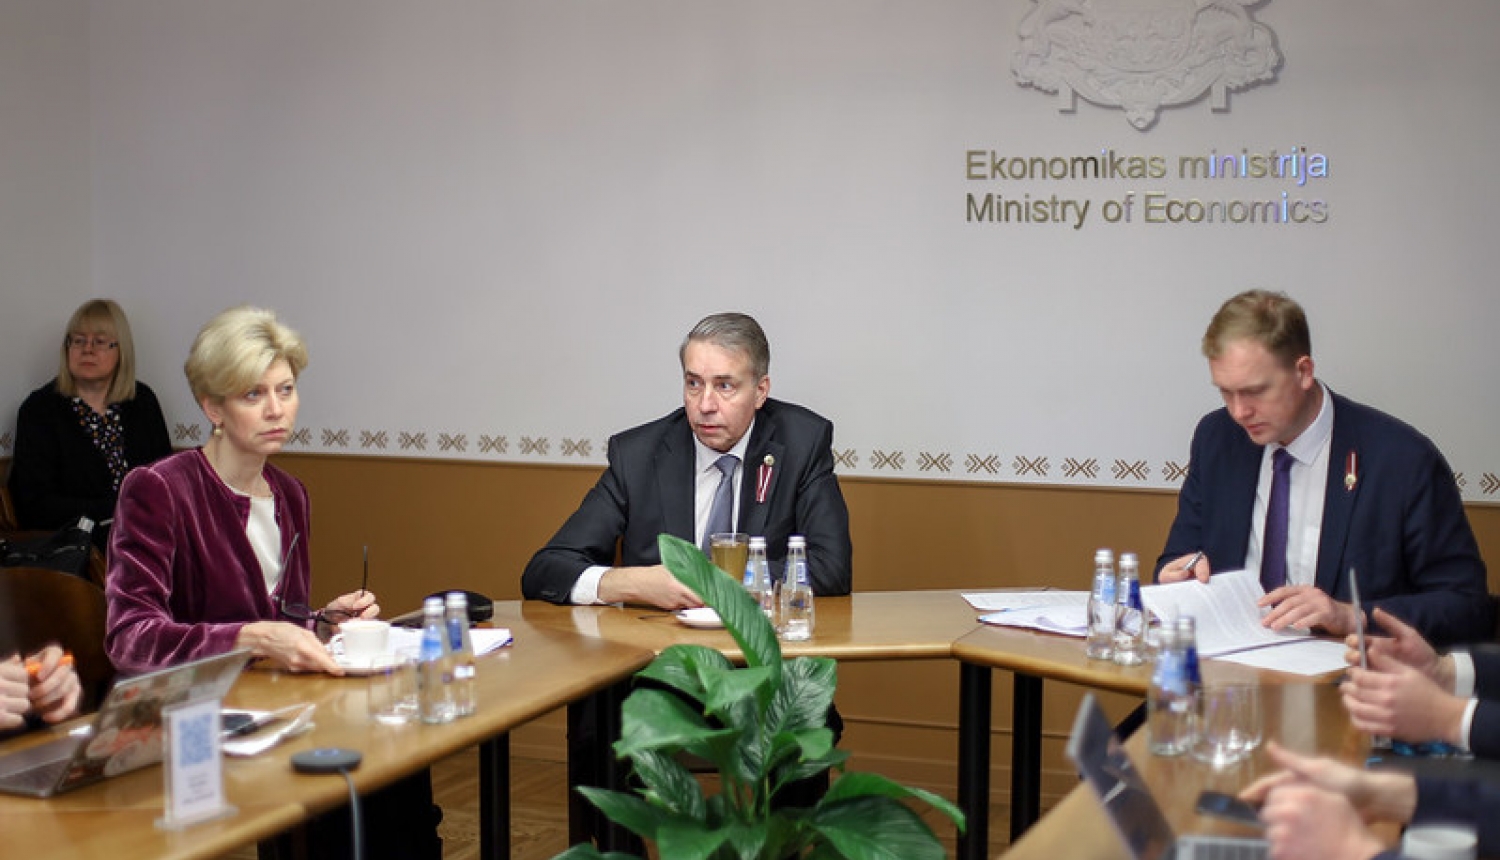 Fotogrāfija no sēdes ar ekonomikas ministru Viktoru Valaini, labklājības ministru Uldi Auguli un izglītības un zinātnes ministri Andu Čakšu